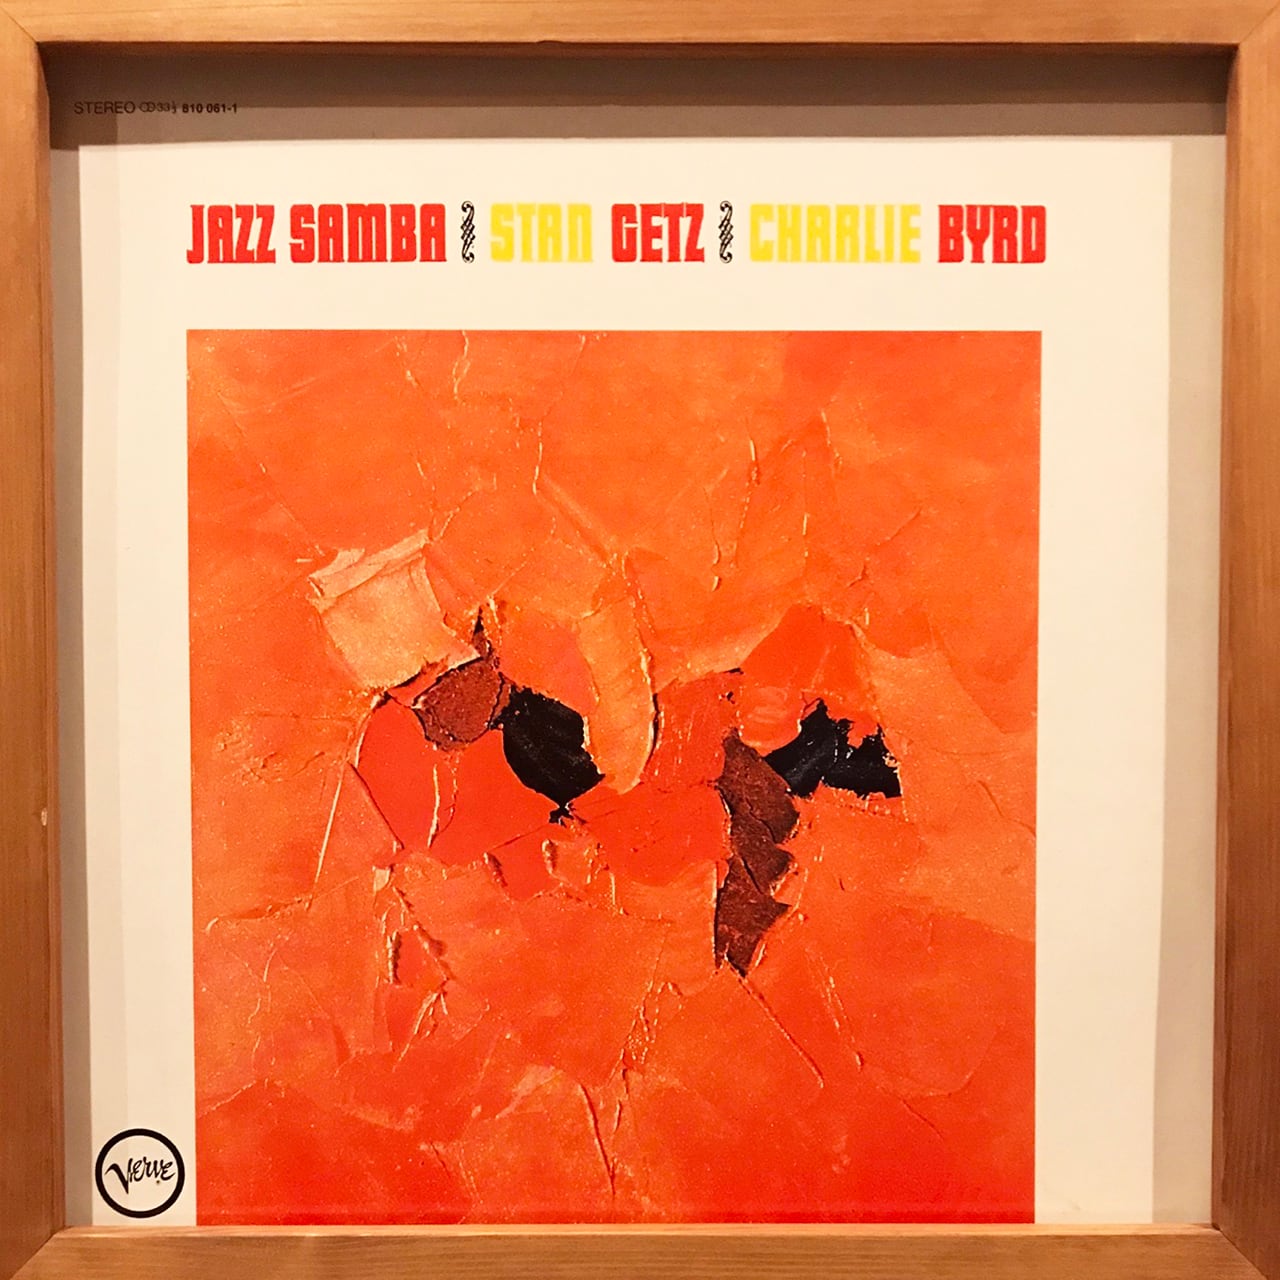 Stan Getz  Charlie Byrd – Jazz Samba (LP) Underground Gallery Record  Store